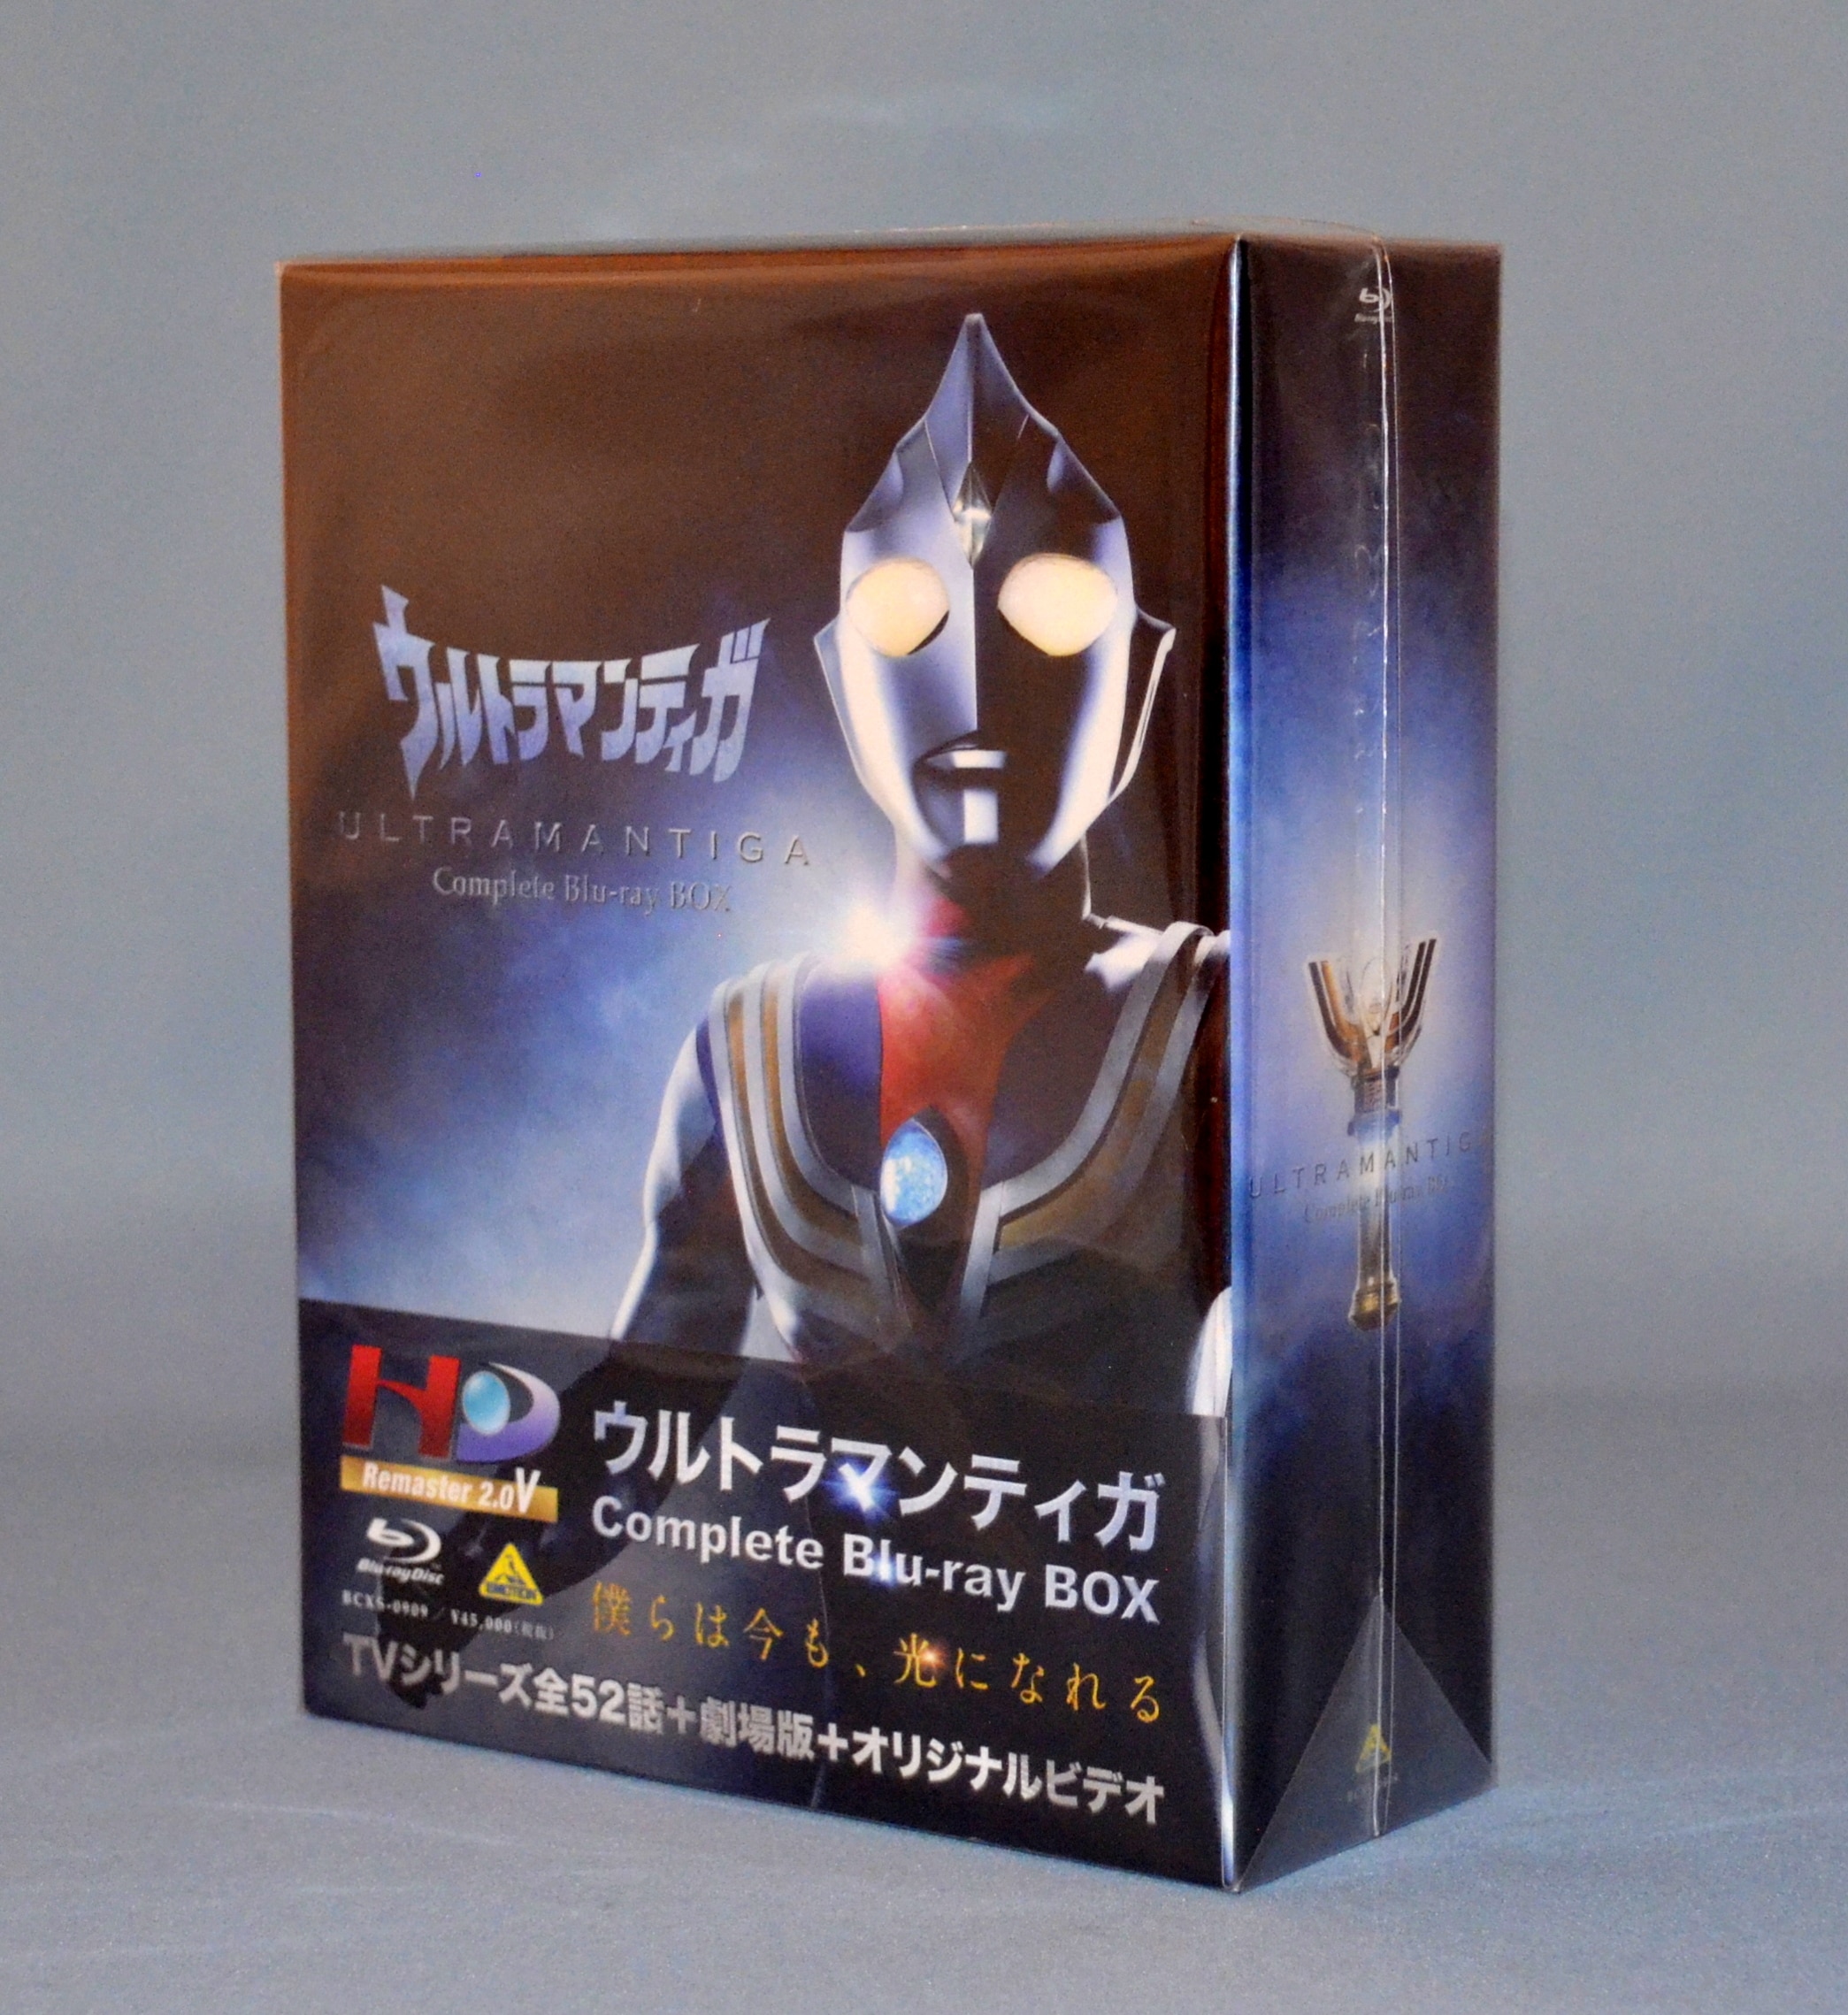 ウルトラマンティガ Complete Blu-ray BOXDVD/ブルーレイ